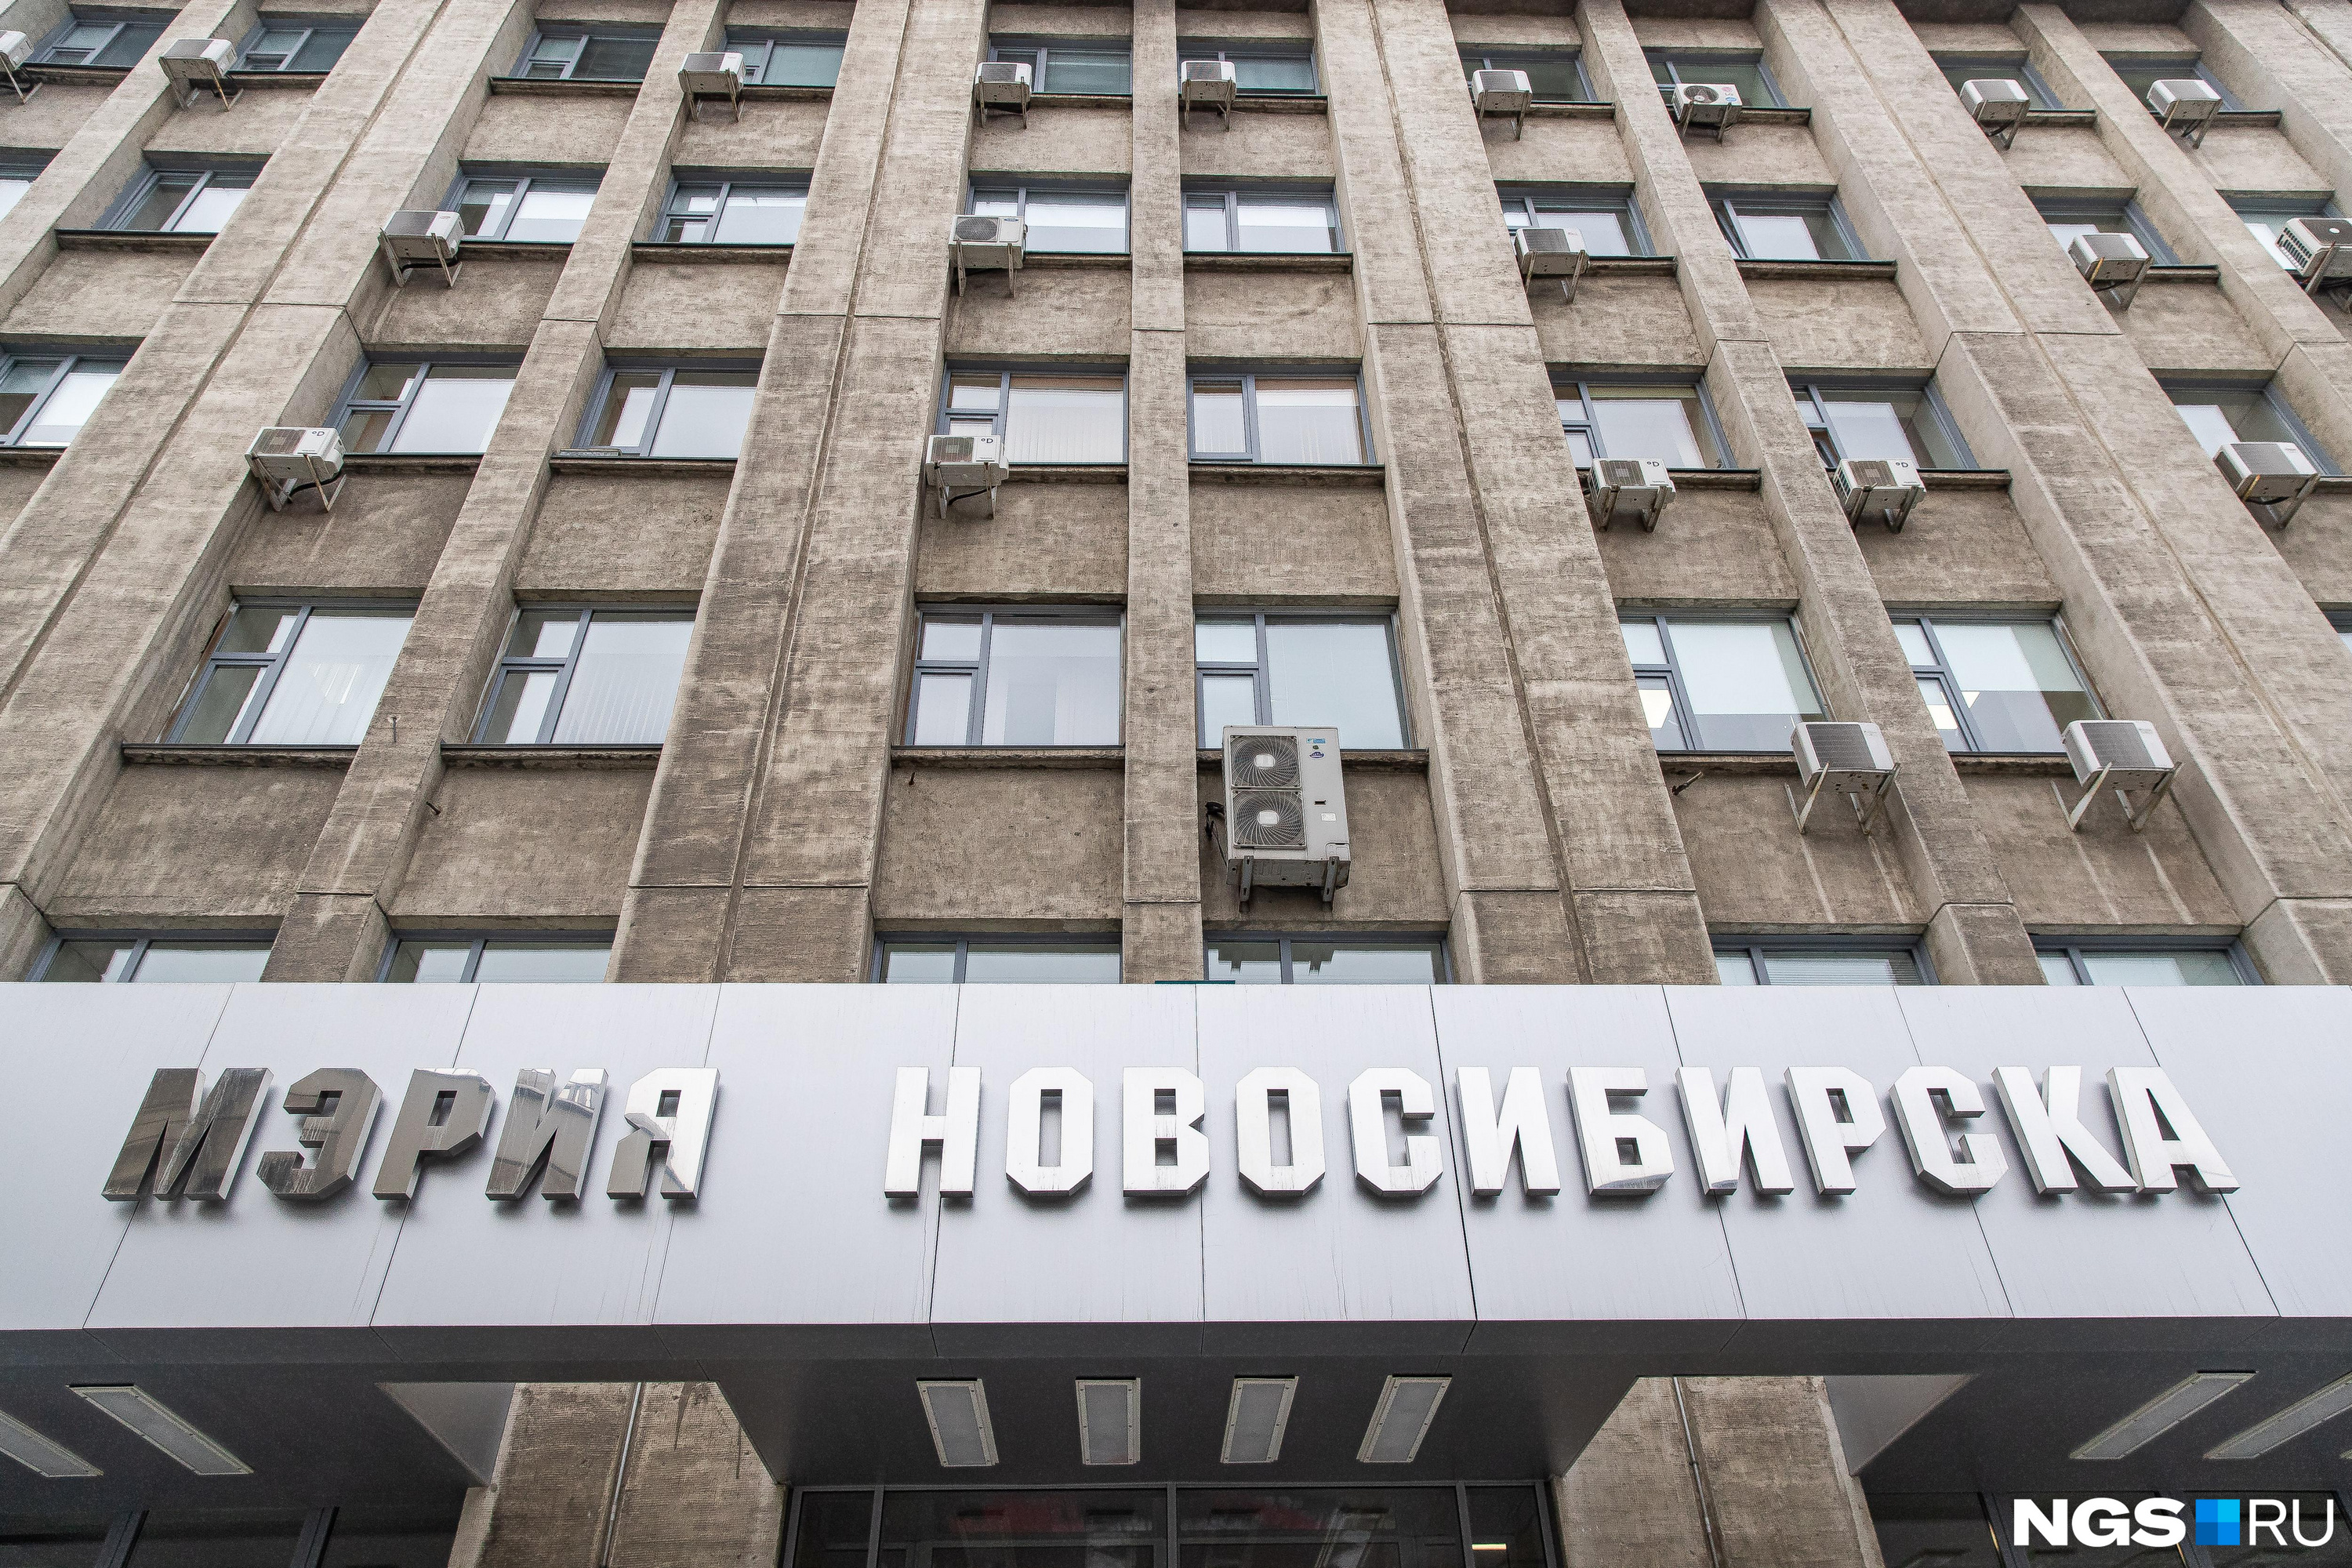 Мэрия Новосибирска опубликовала доходы чиновника — сколько он заработал